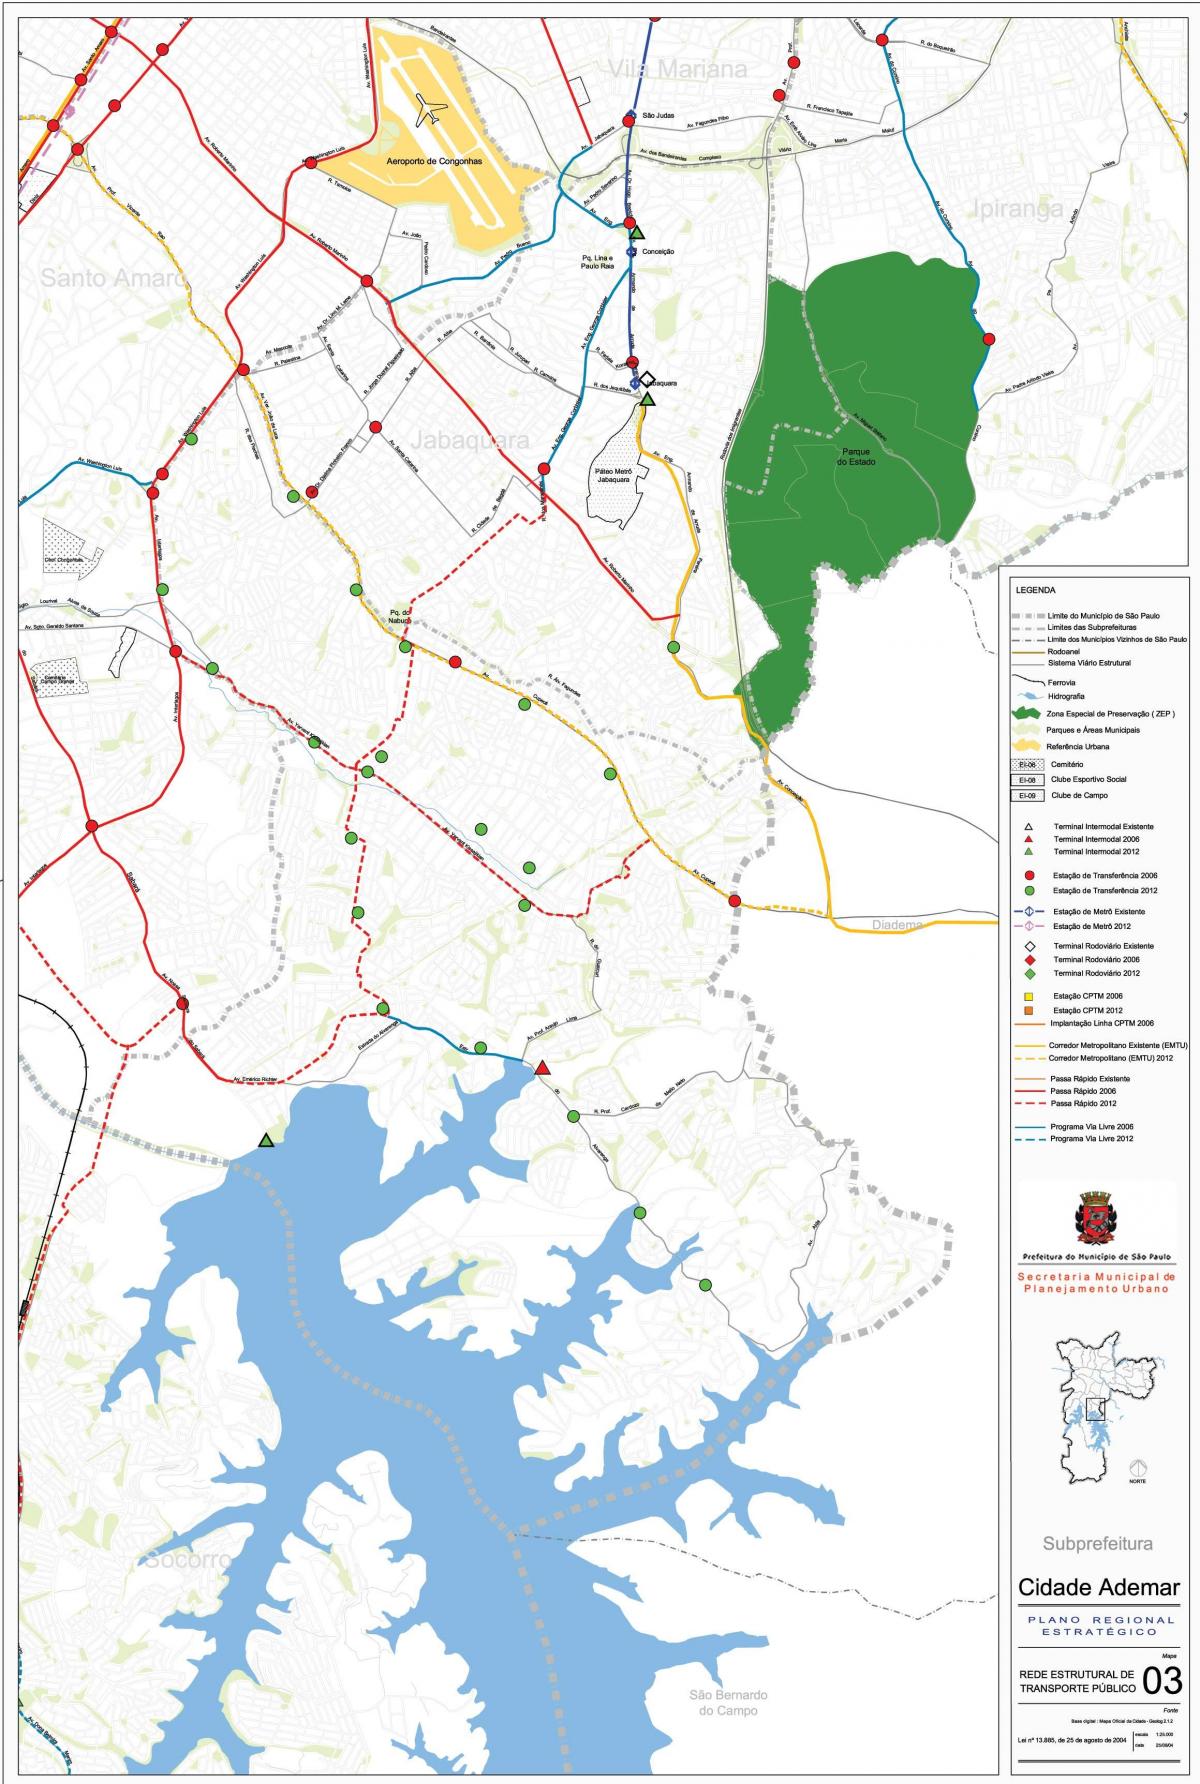 Mapa Cidade Ademar São Paulo - garraio Publiko